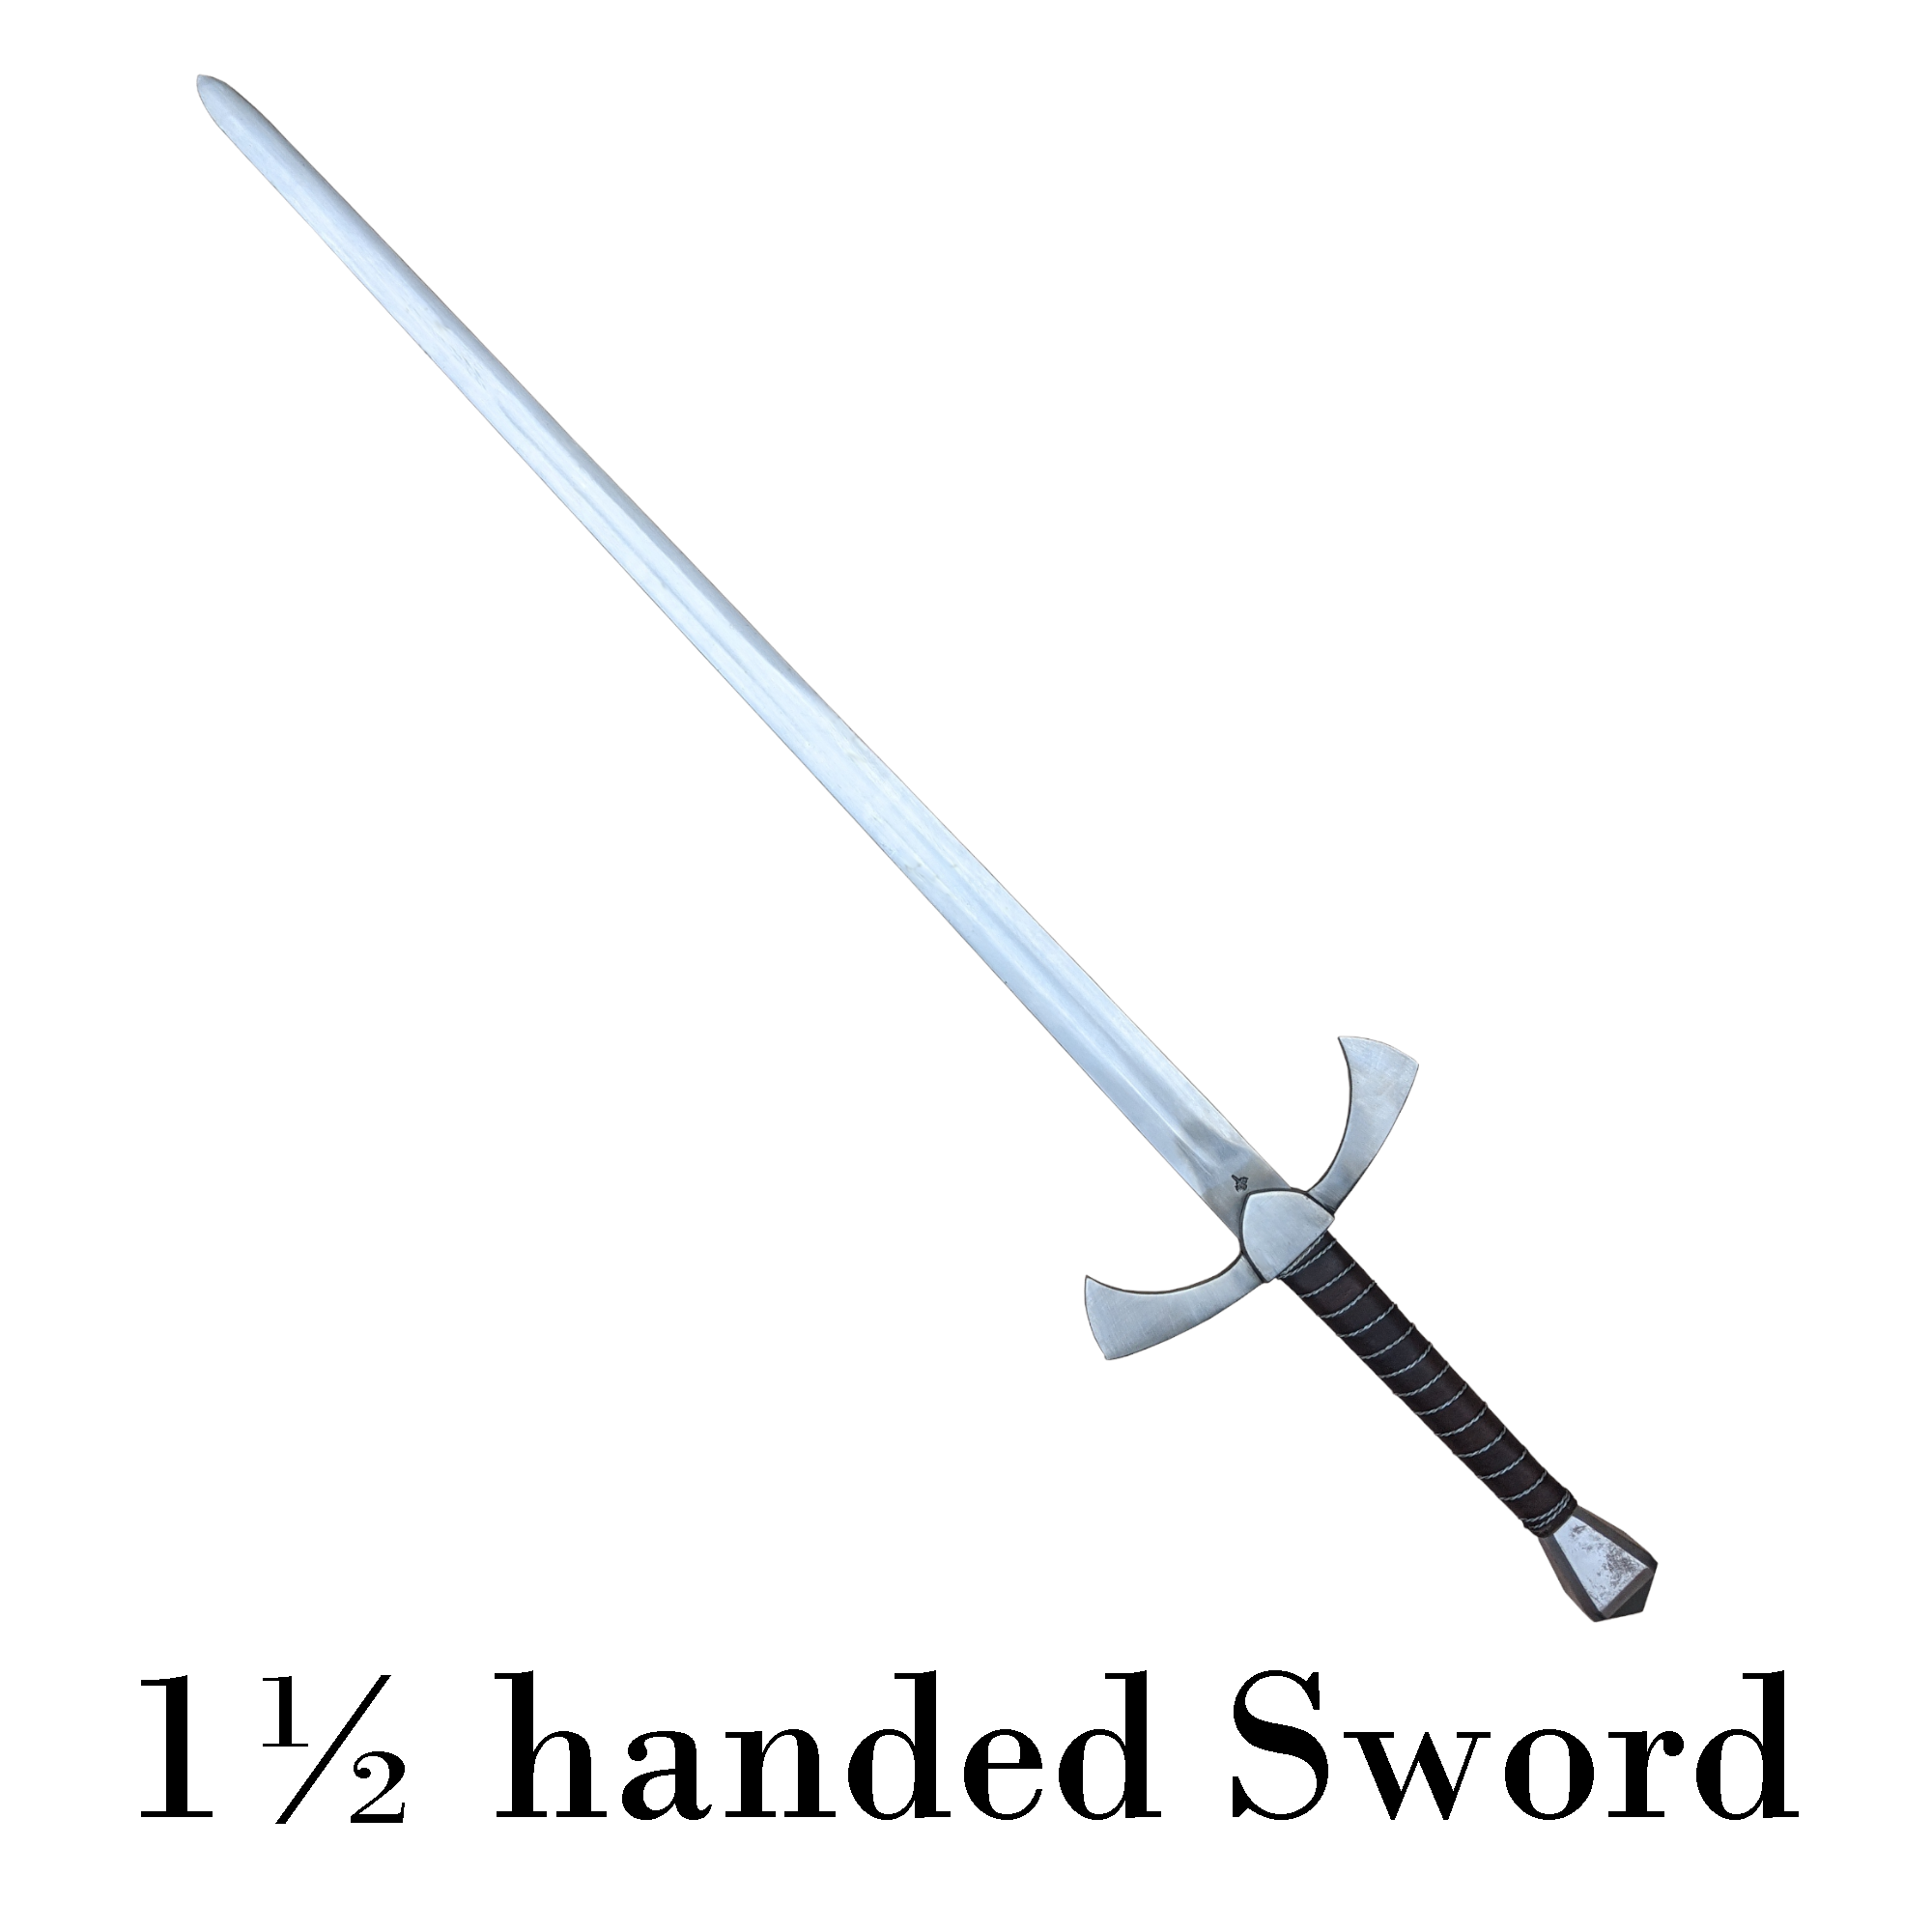 ACEJET SWORD ECTOR - 1½ handed